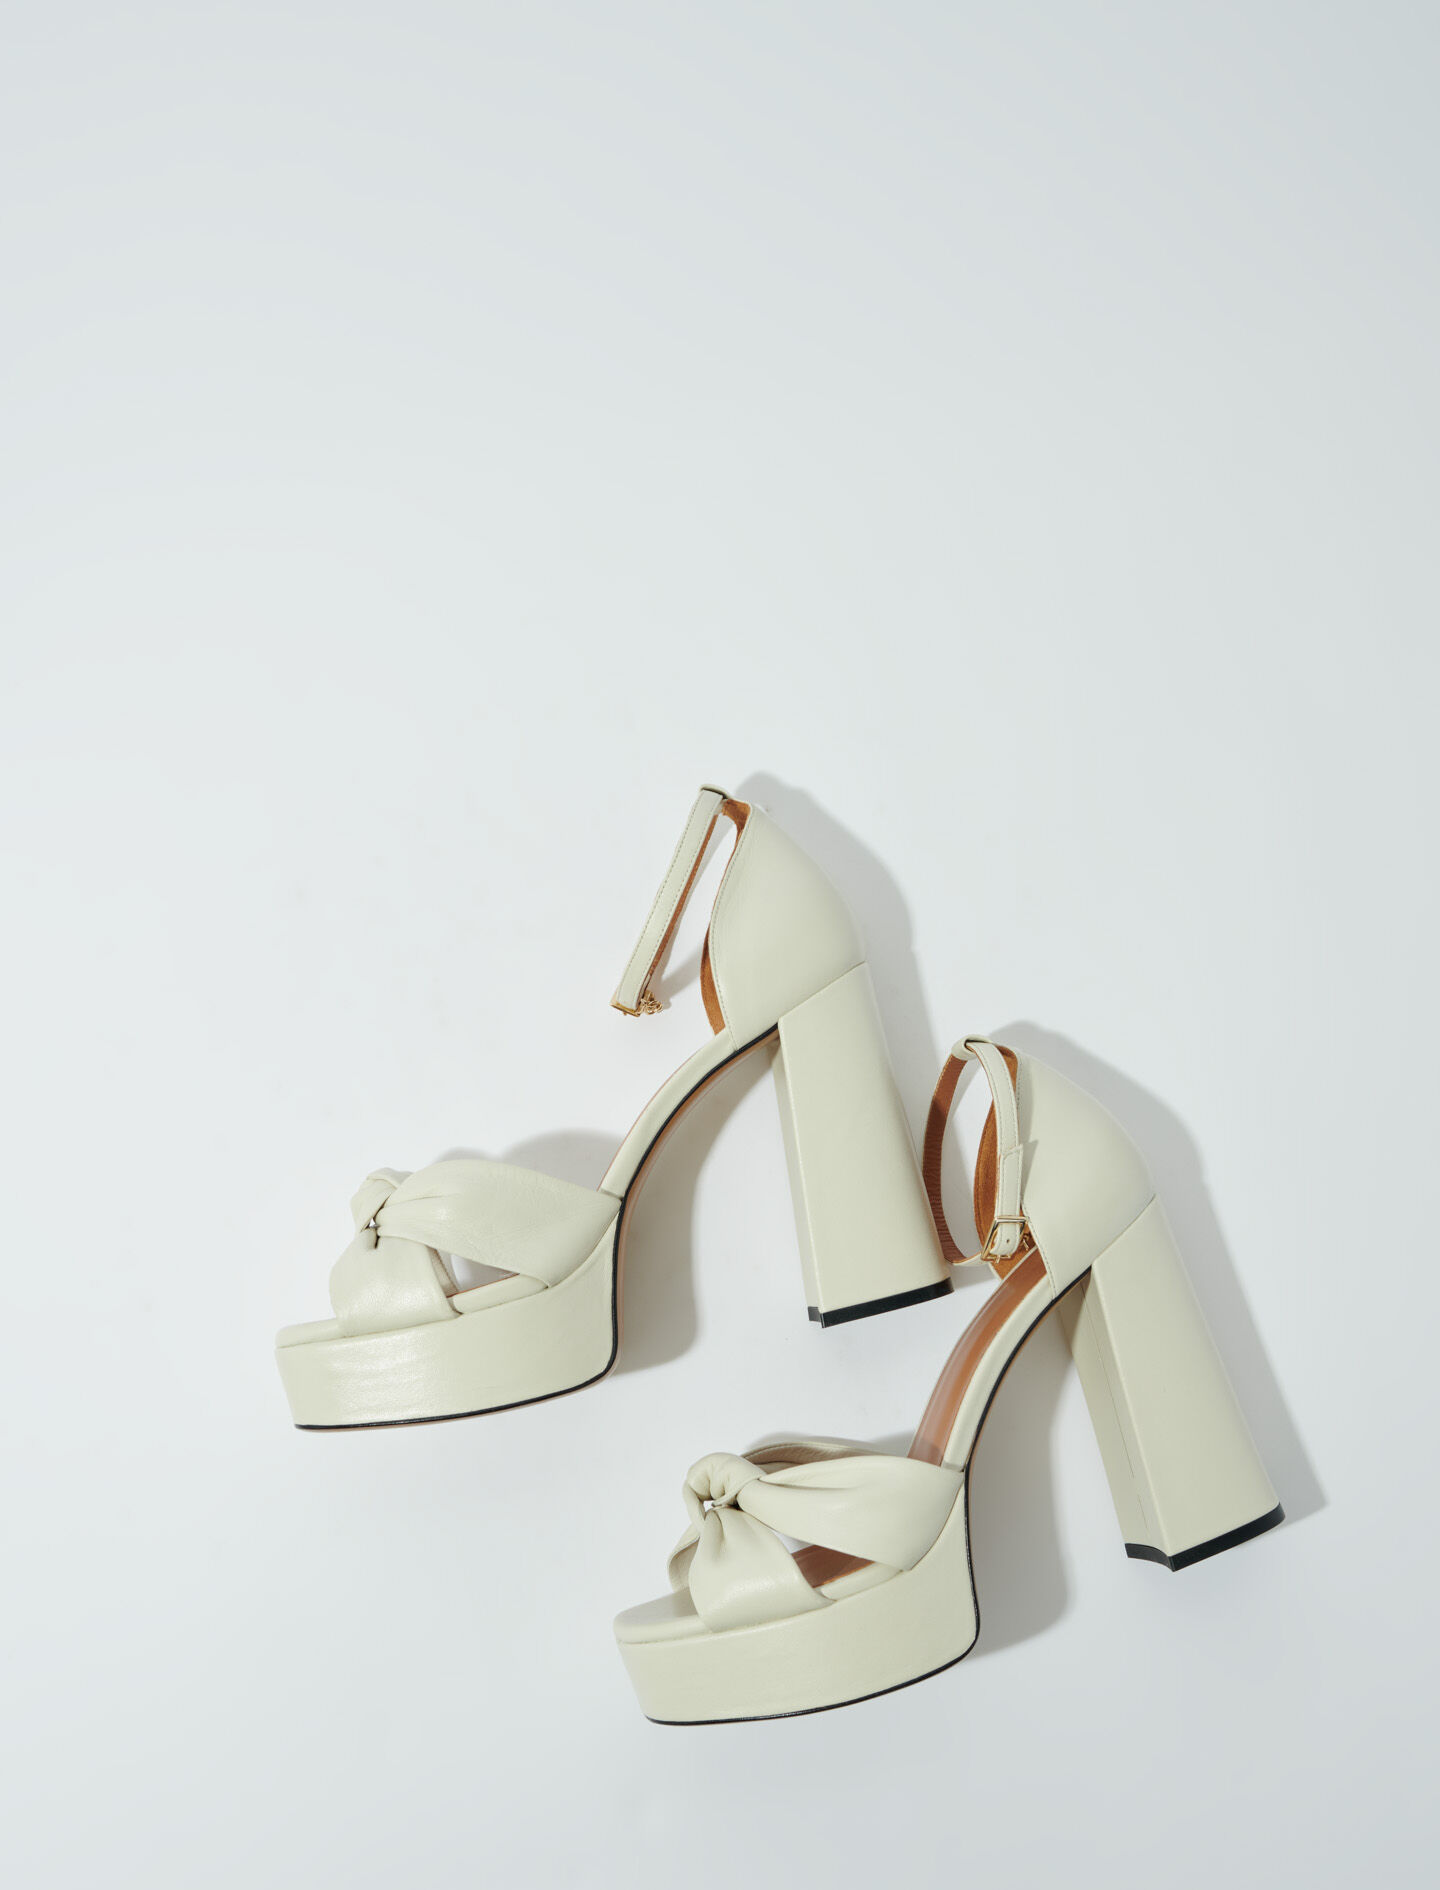 Saint Laurent Shoes for Women | YSL | FARFETCH US